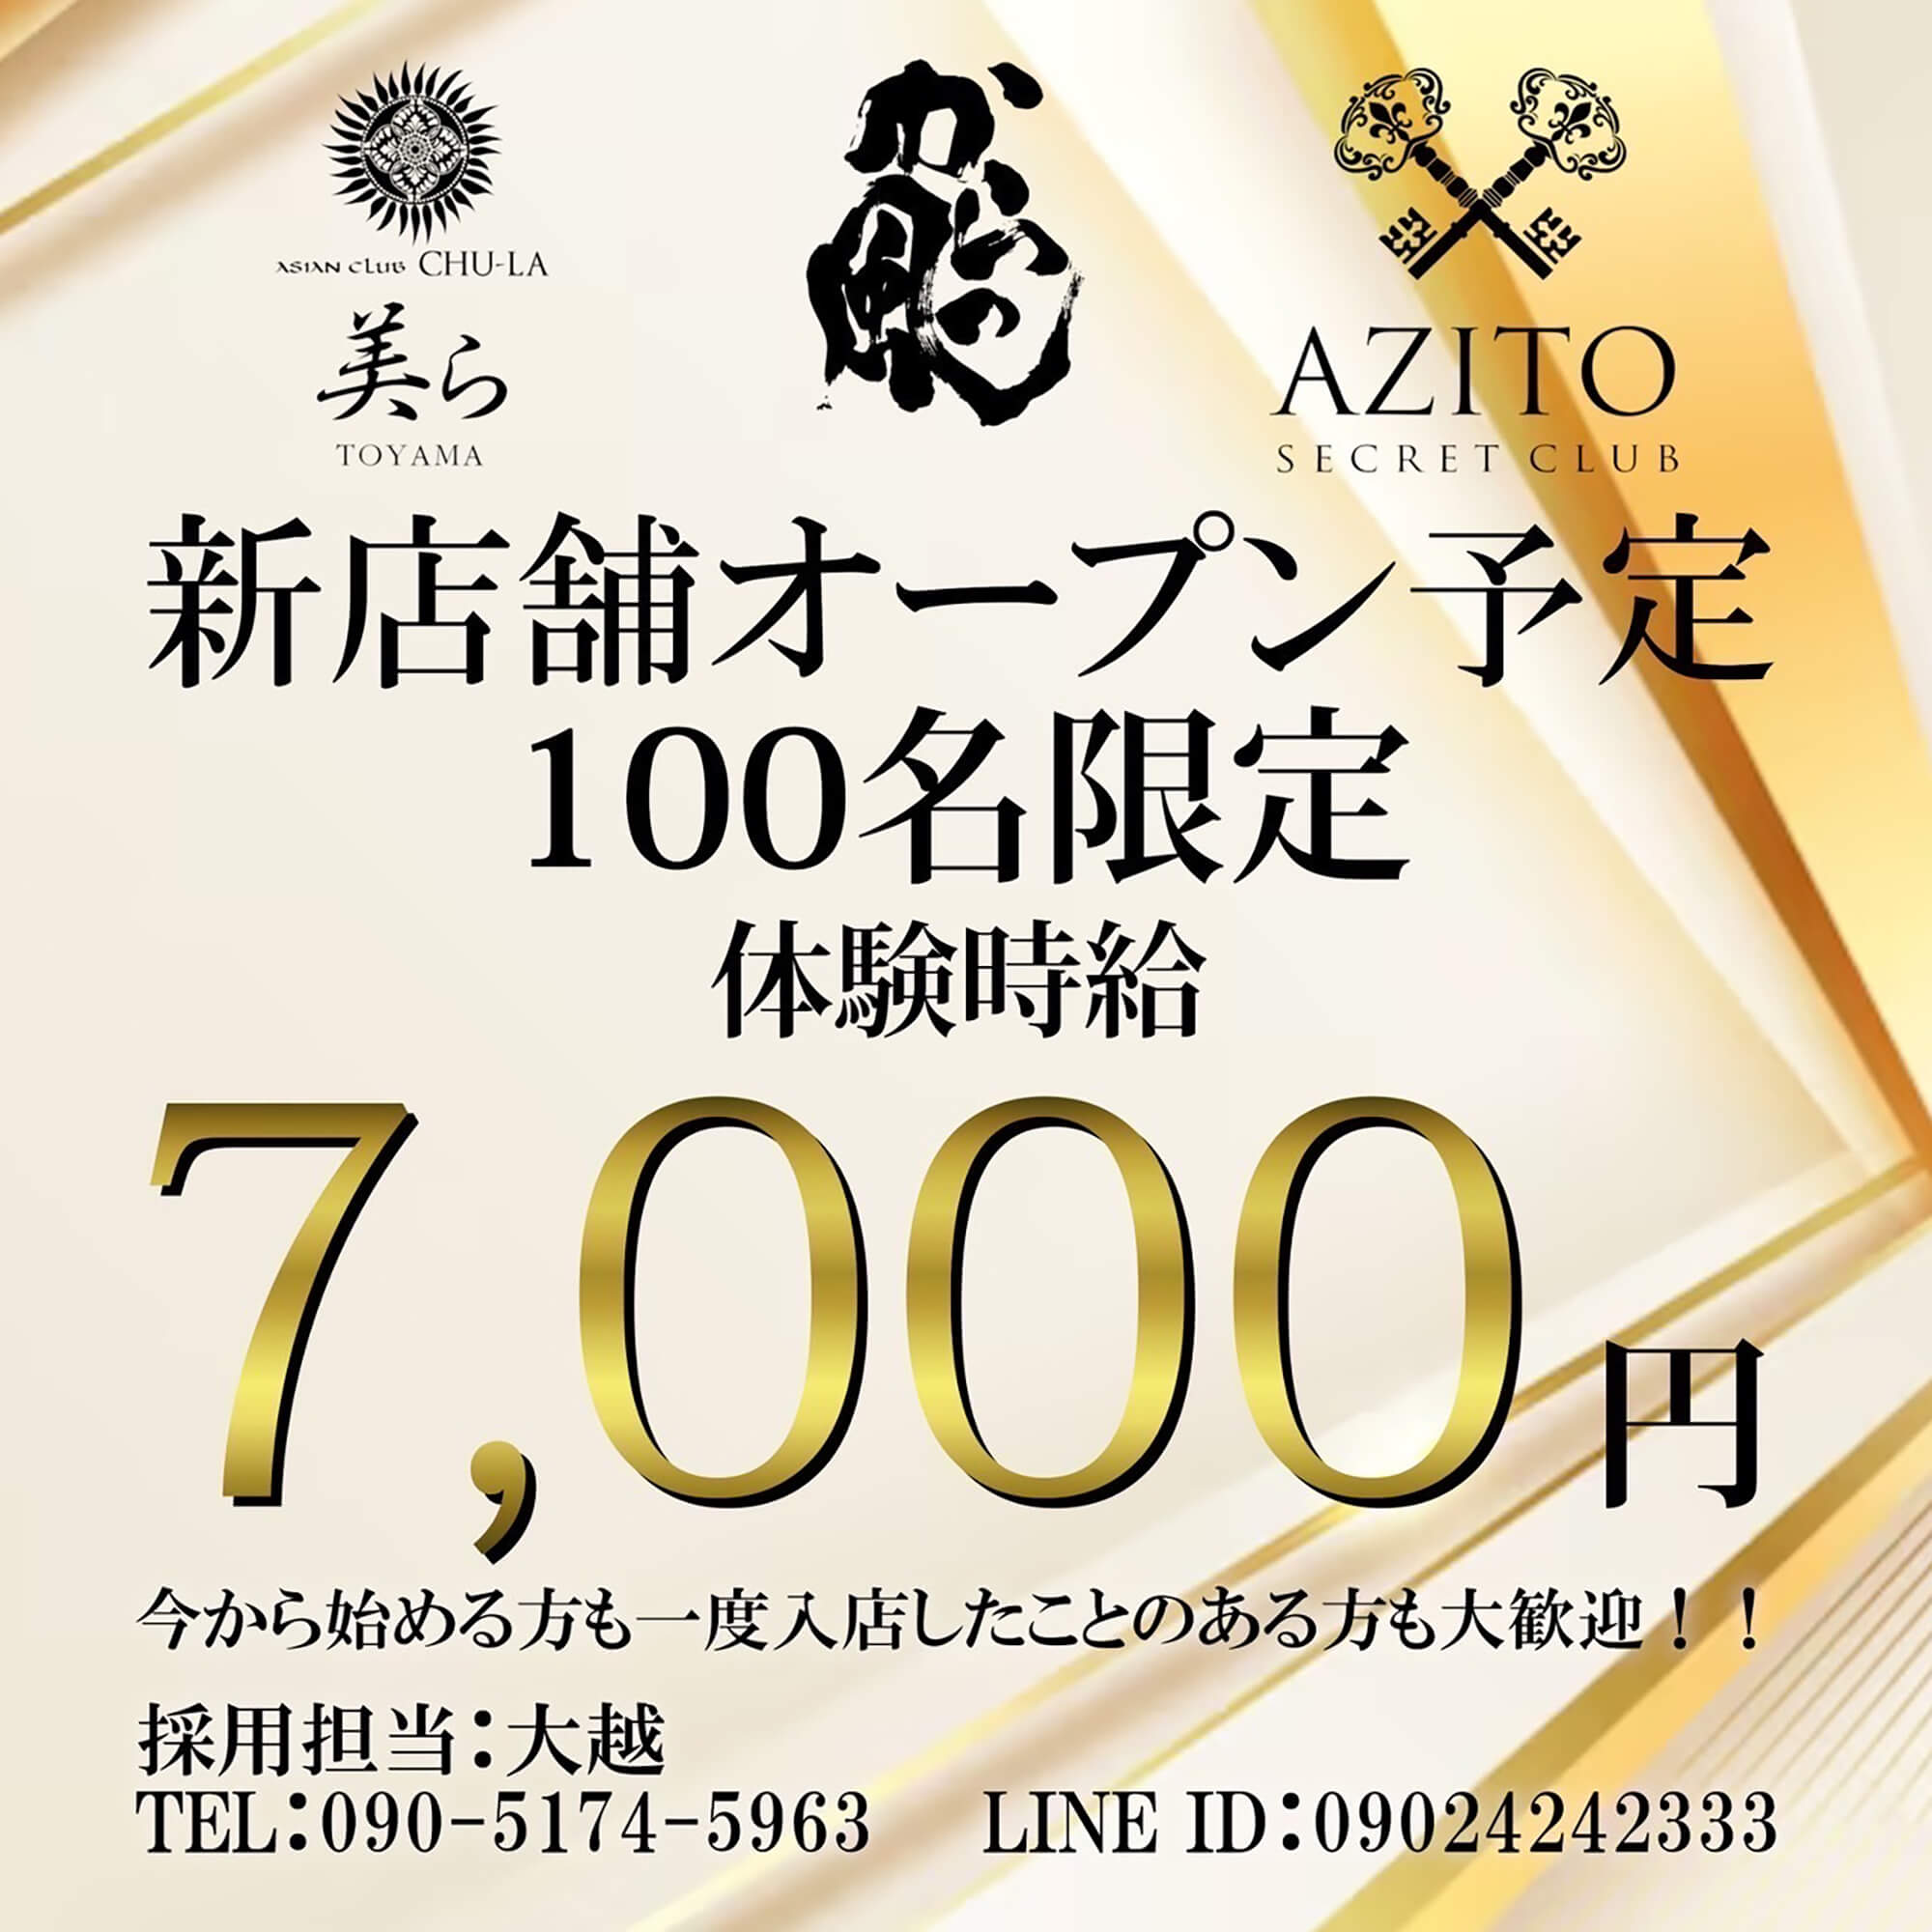 富山 キャバクラ「SECRET CLUB AZITO」ショップニュース